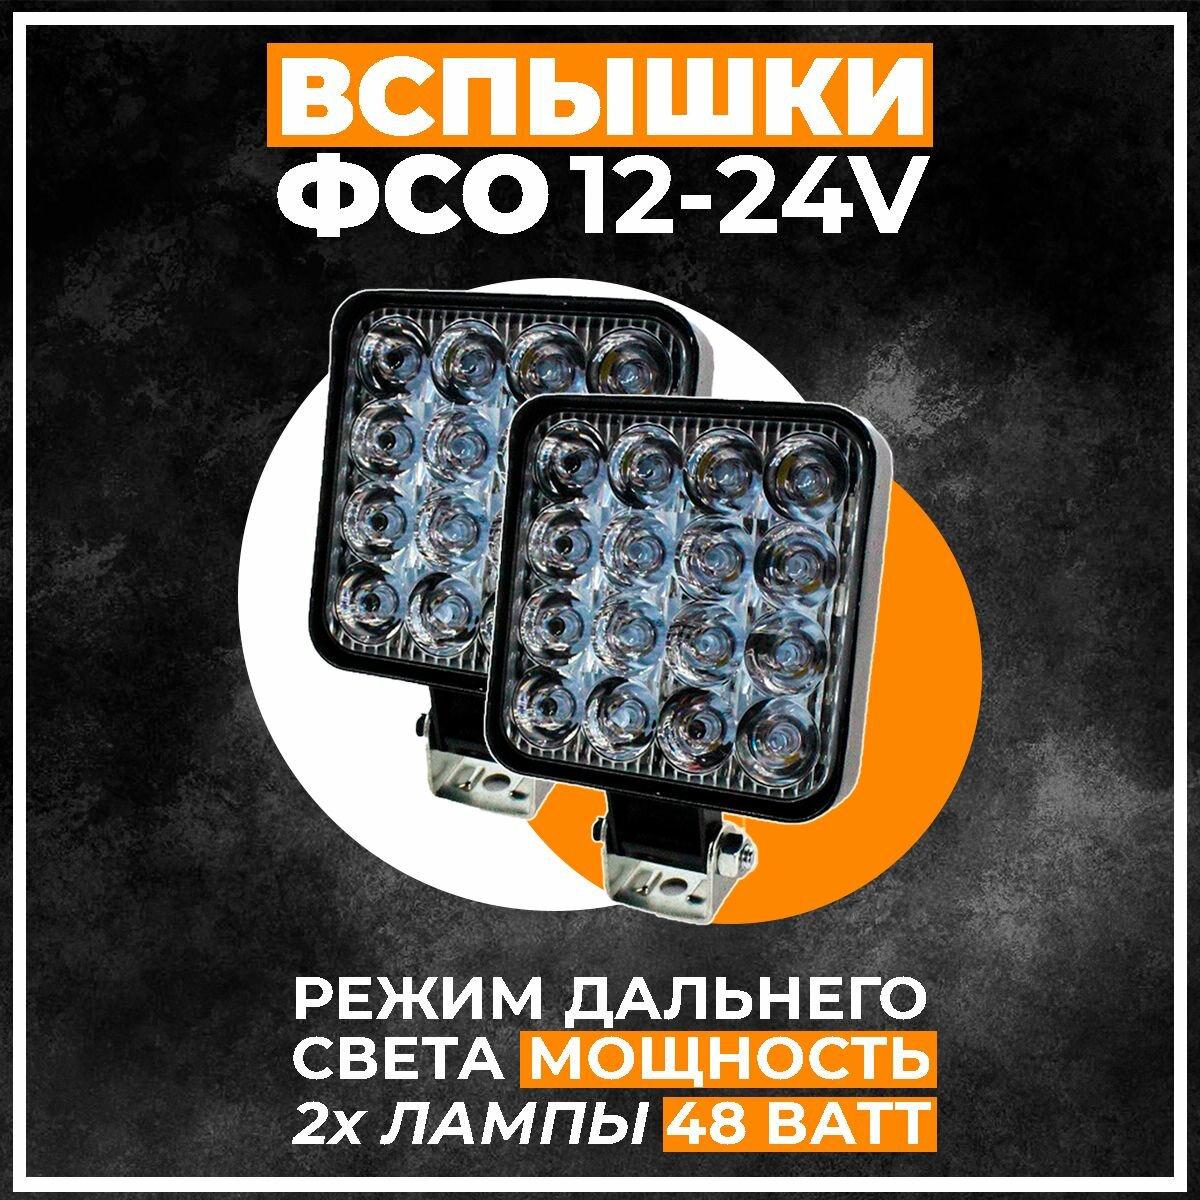 Фара светодиодная противотуманная 2 шт, LED на авто, Вспышки ФСО, Светодиодные лампы в фары, 12-24V, 16 диодов, 48W